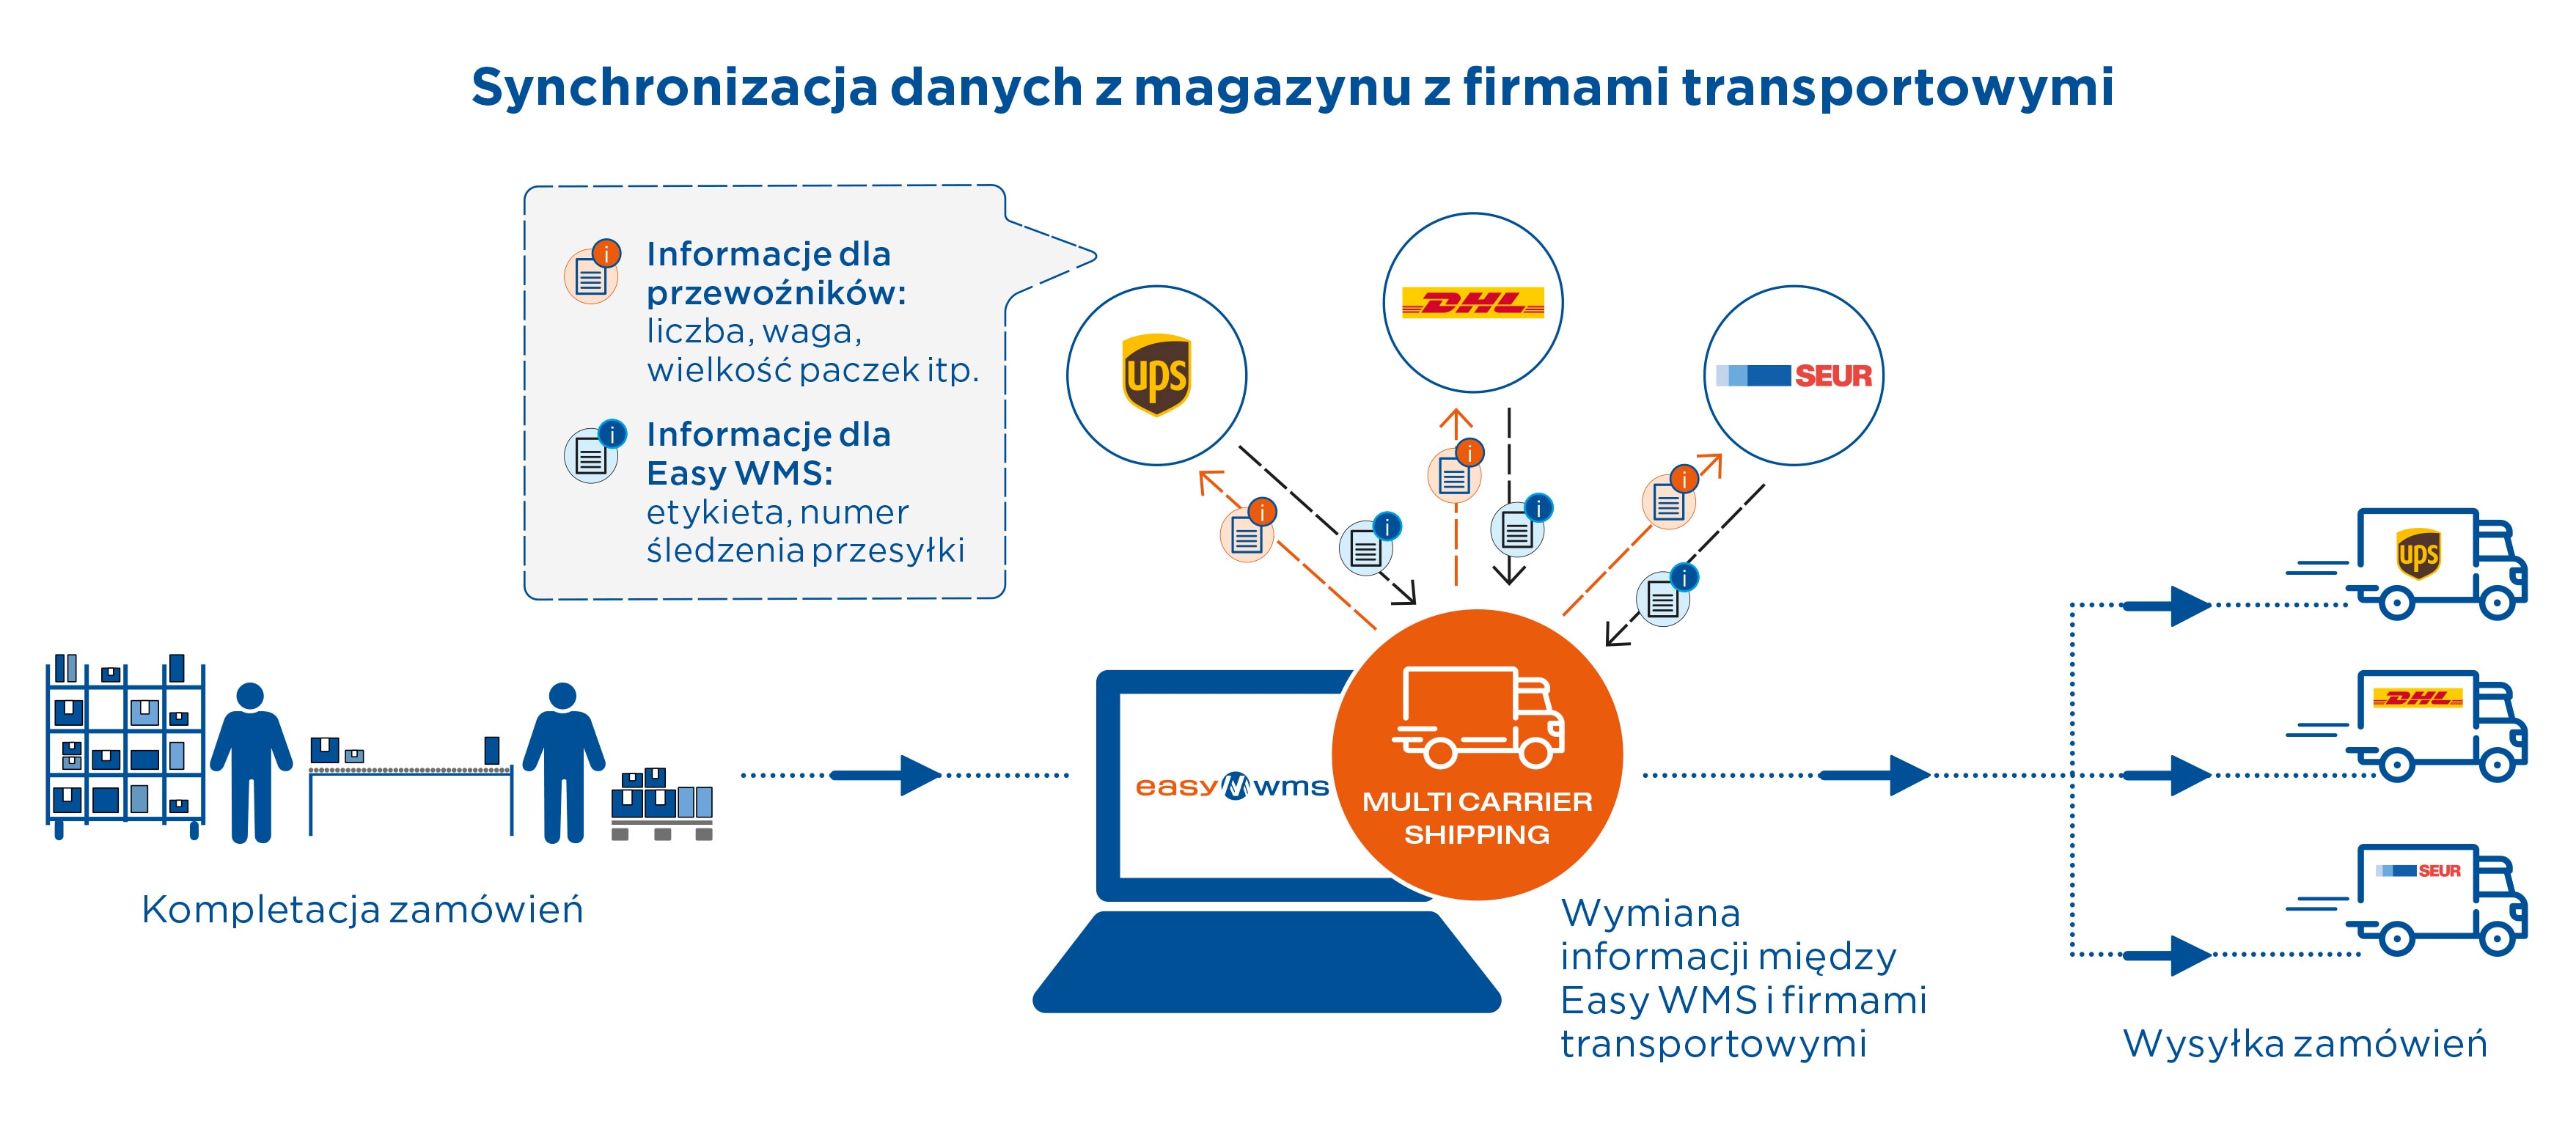 Synchronizacja danych z magazynu z firmami transportowymi